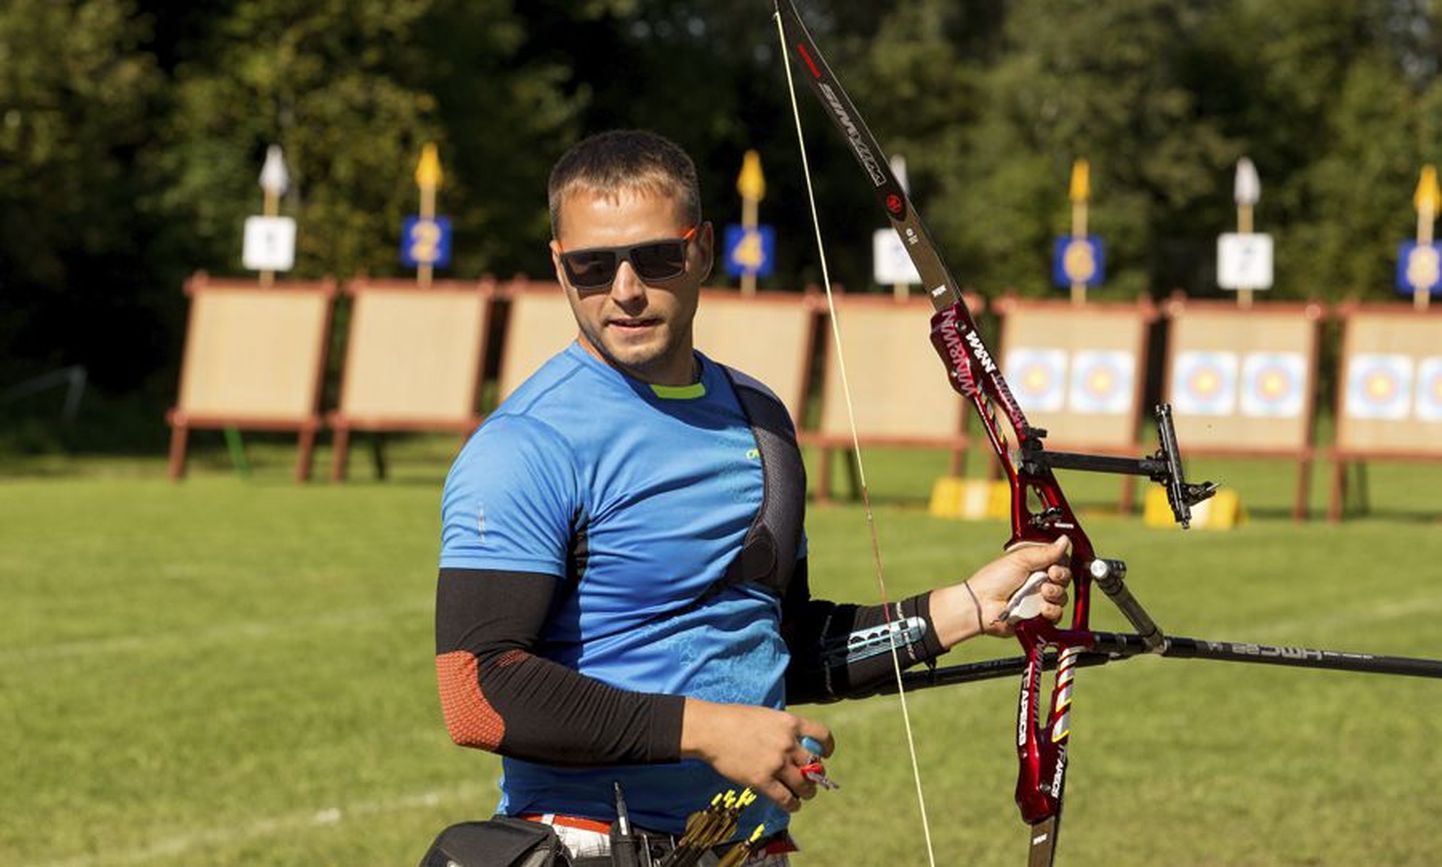 Sportvibulaskja Martin Rist teenis läinud nädalavahetusel Eesti meistrivõistlustel kolm medalit: kaks kuldset võistkondlikel mõõduvõttudel ja pronksi individuaalses arvestuses.